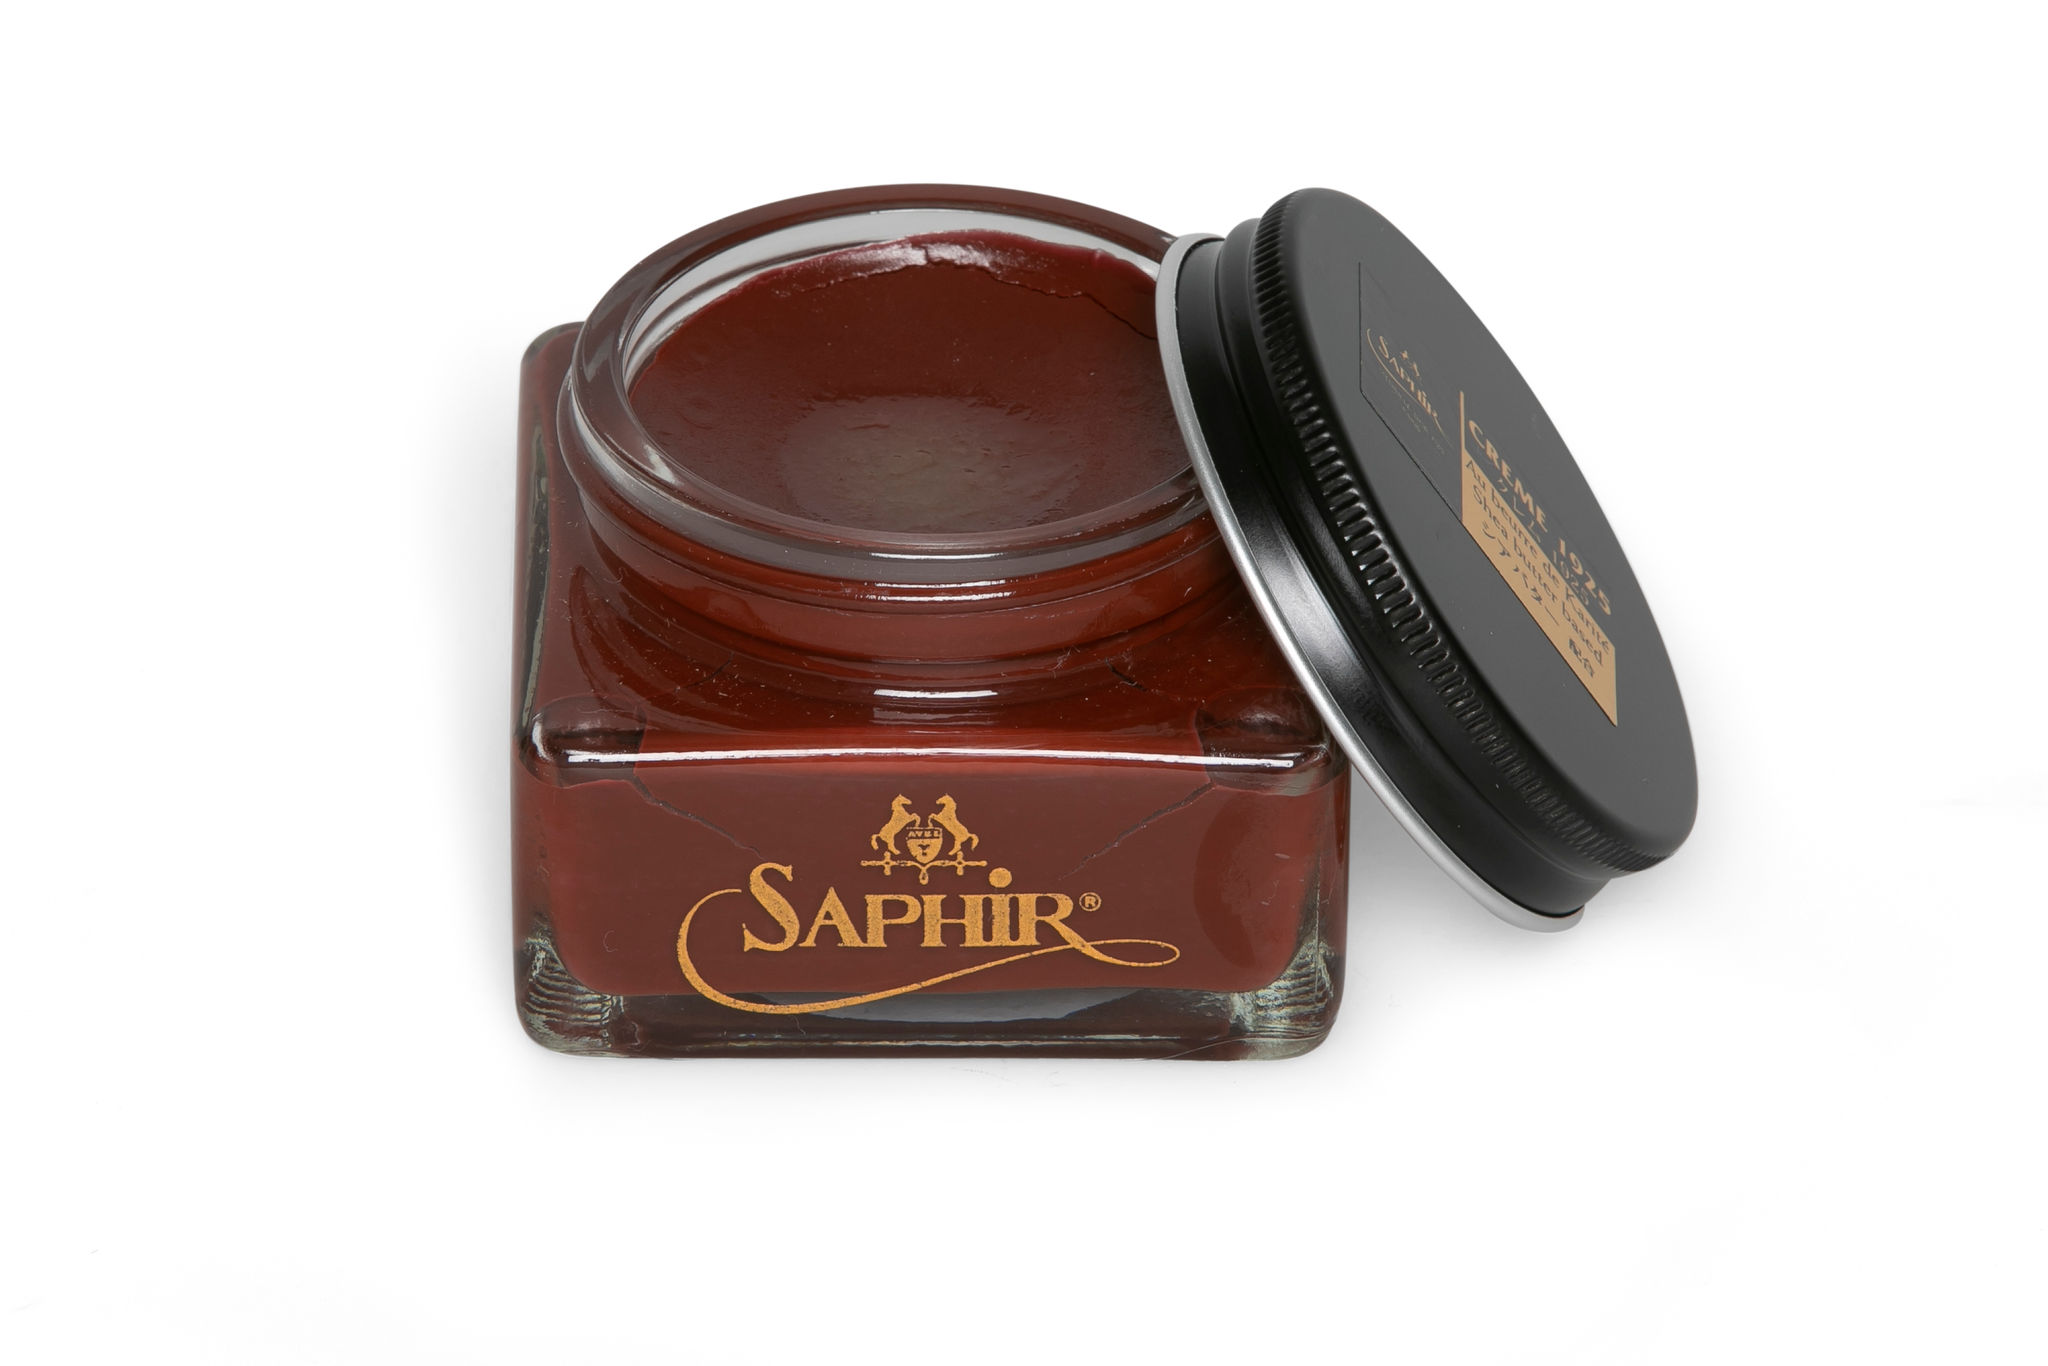 Saphir Pommadier cream in Mahogany colour for premium shoe care